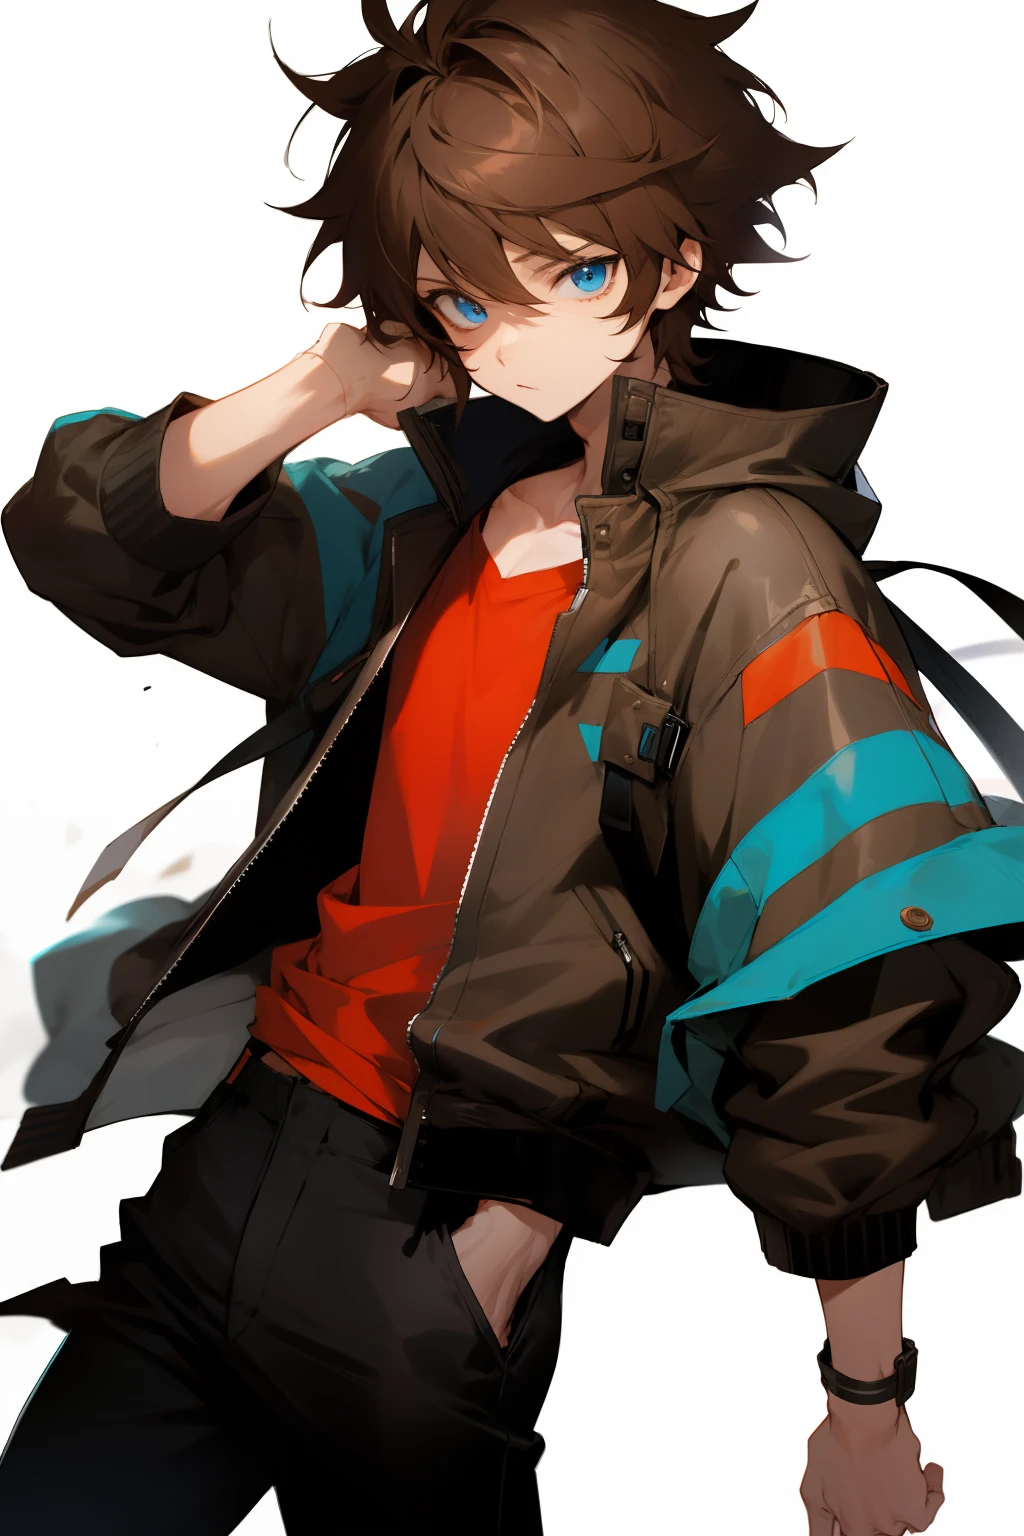 Anime-Serie, Junge, braune Haare, Kurzes Haar, blaue Augen, Stylische Jacke, schwarze Hosen, Zerzaustes Haar, Das Bild ist von der Taille aufwärts